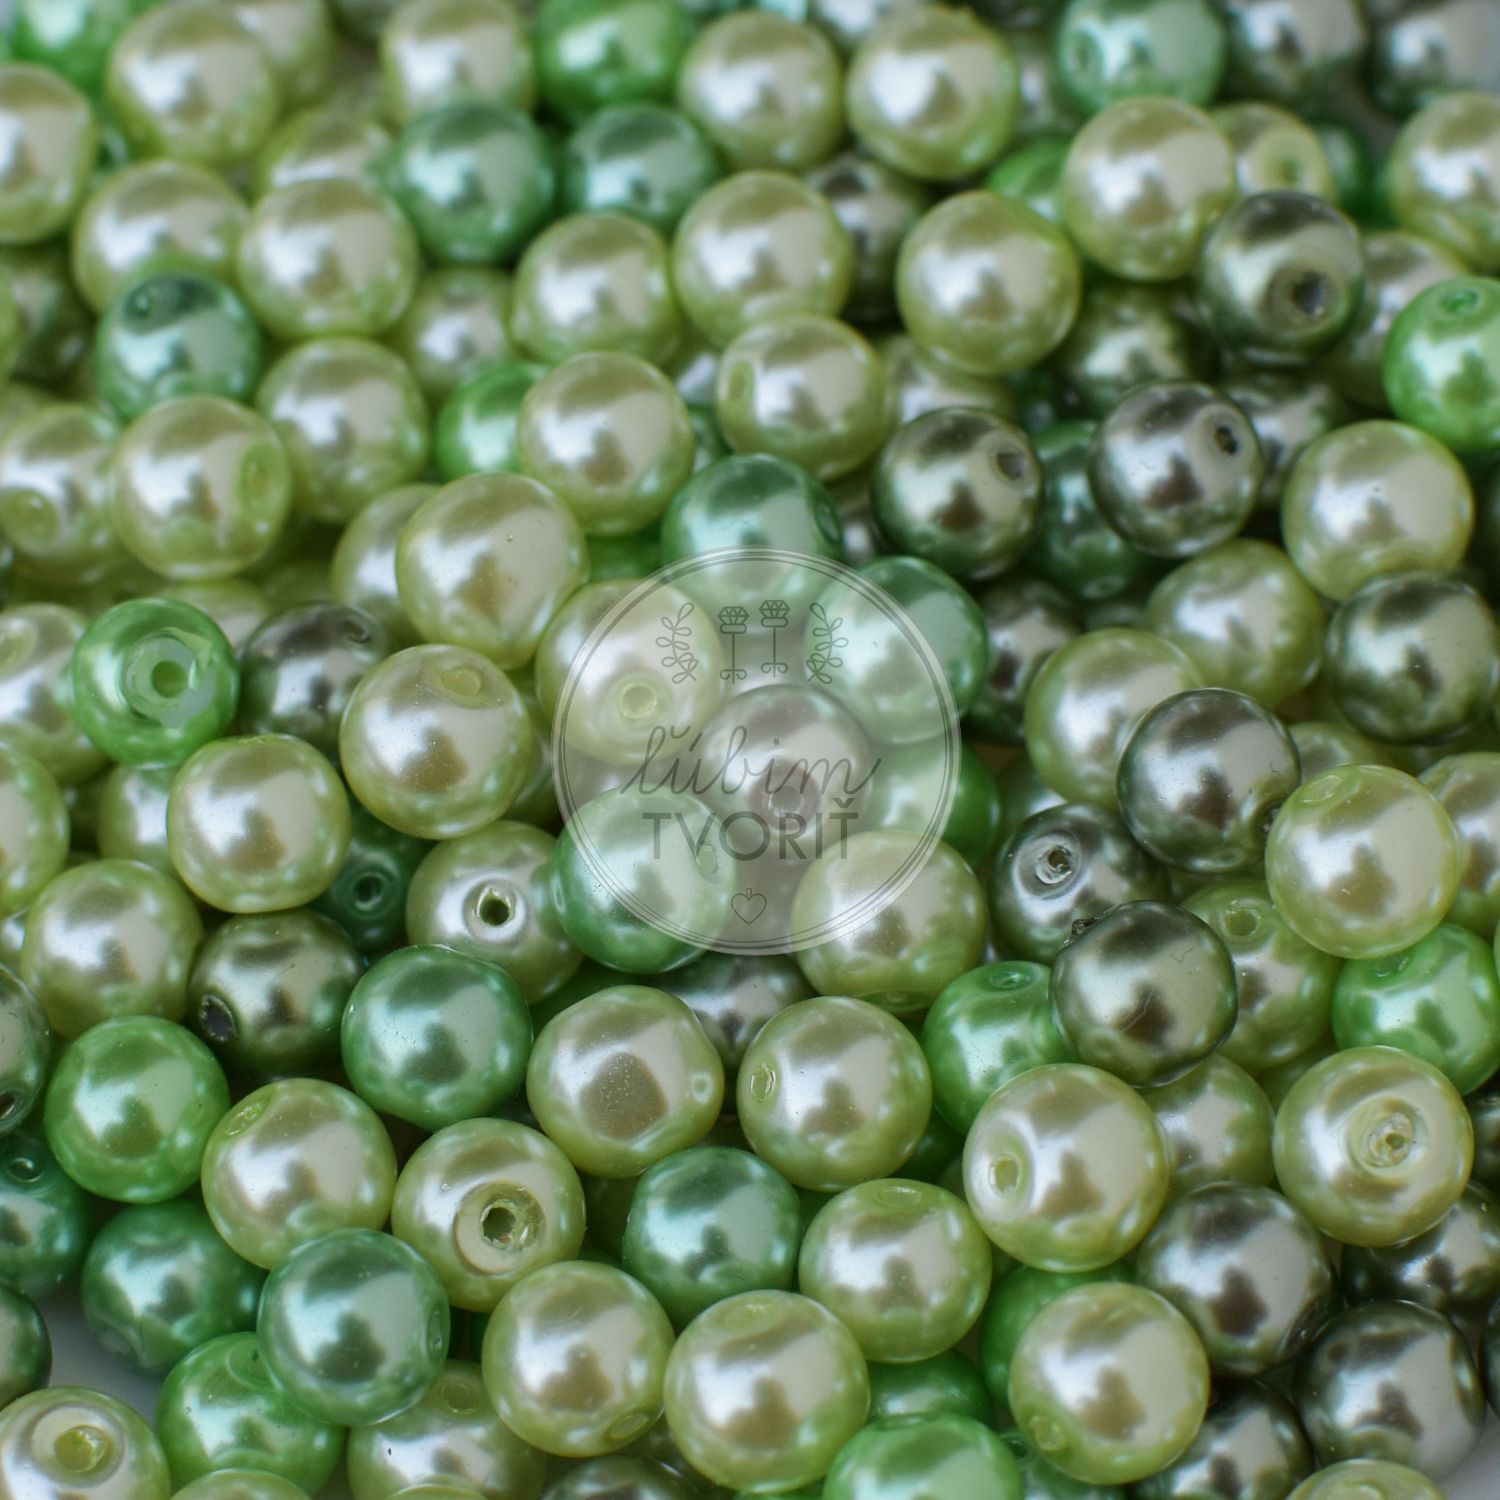 Sklenené perly, 8 mm - 20 g (cca 30 ks)